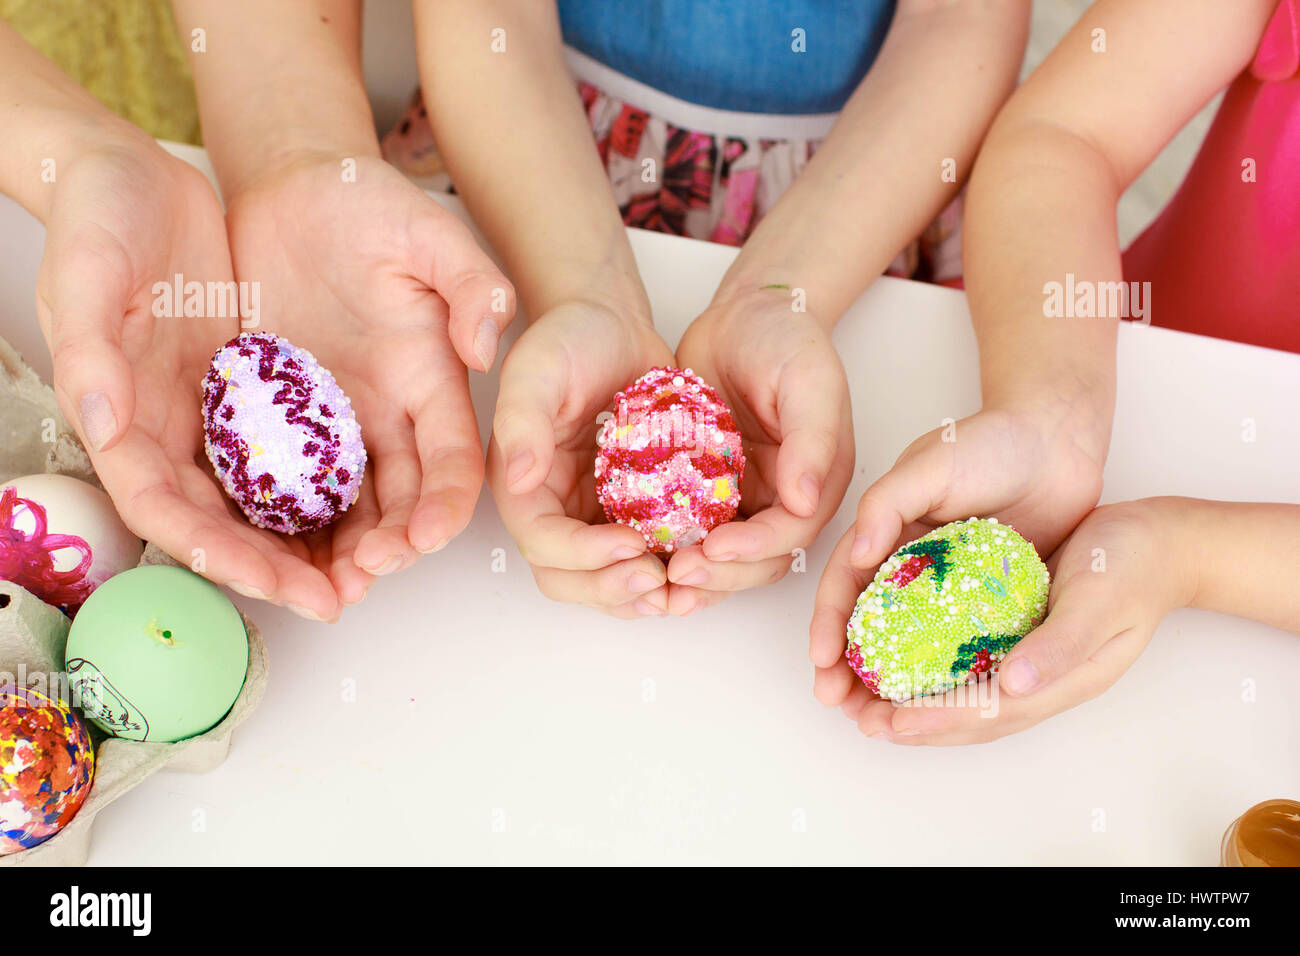 Joyeuses Pâques, une mère et ses filles peinture des oeufs de Pâques. Famille heureuse la préparation pour Pâques. Banque D'Images